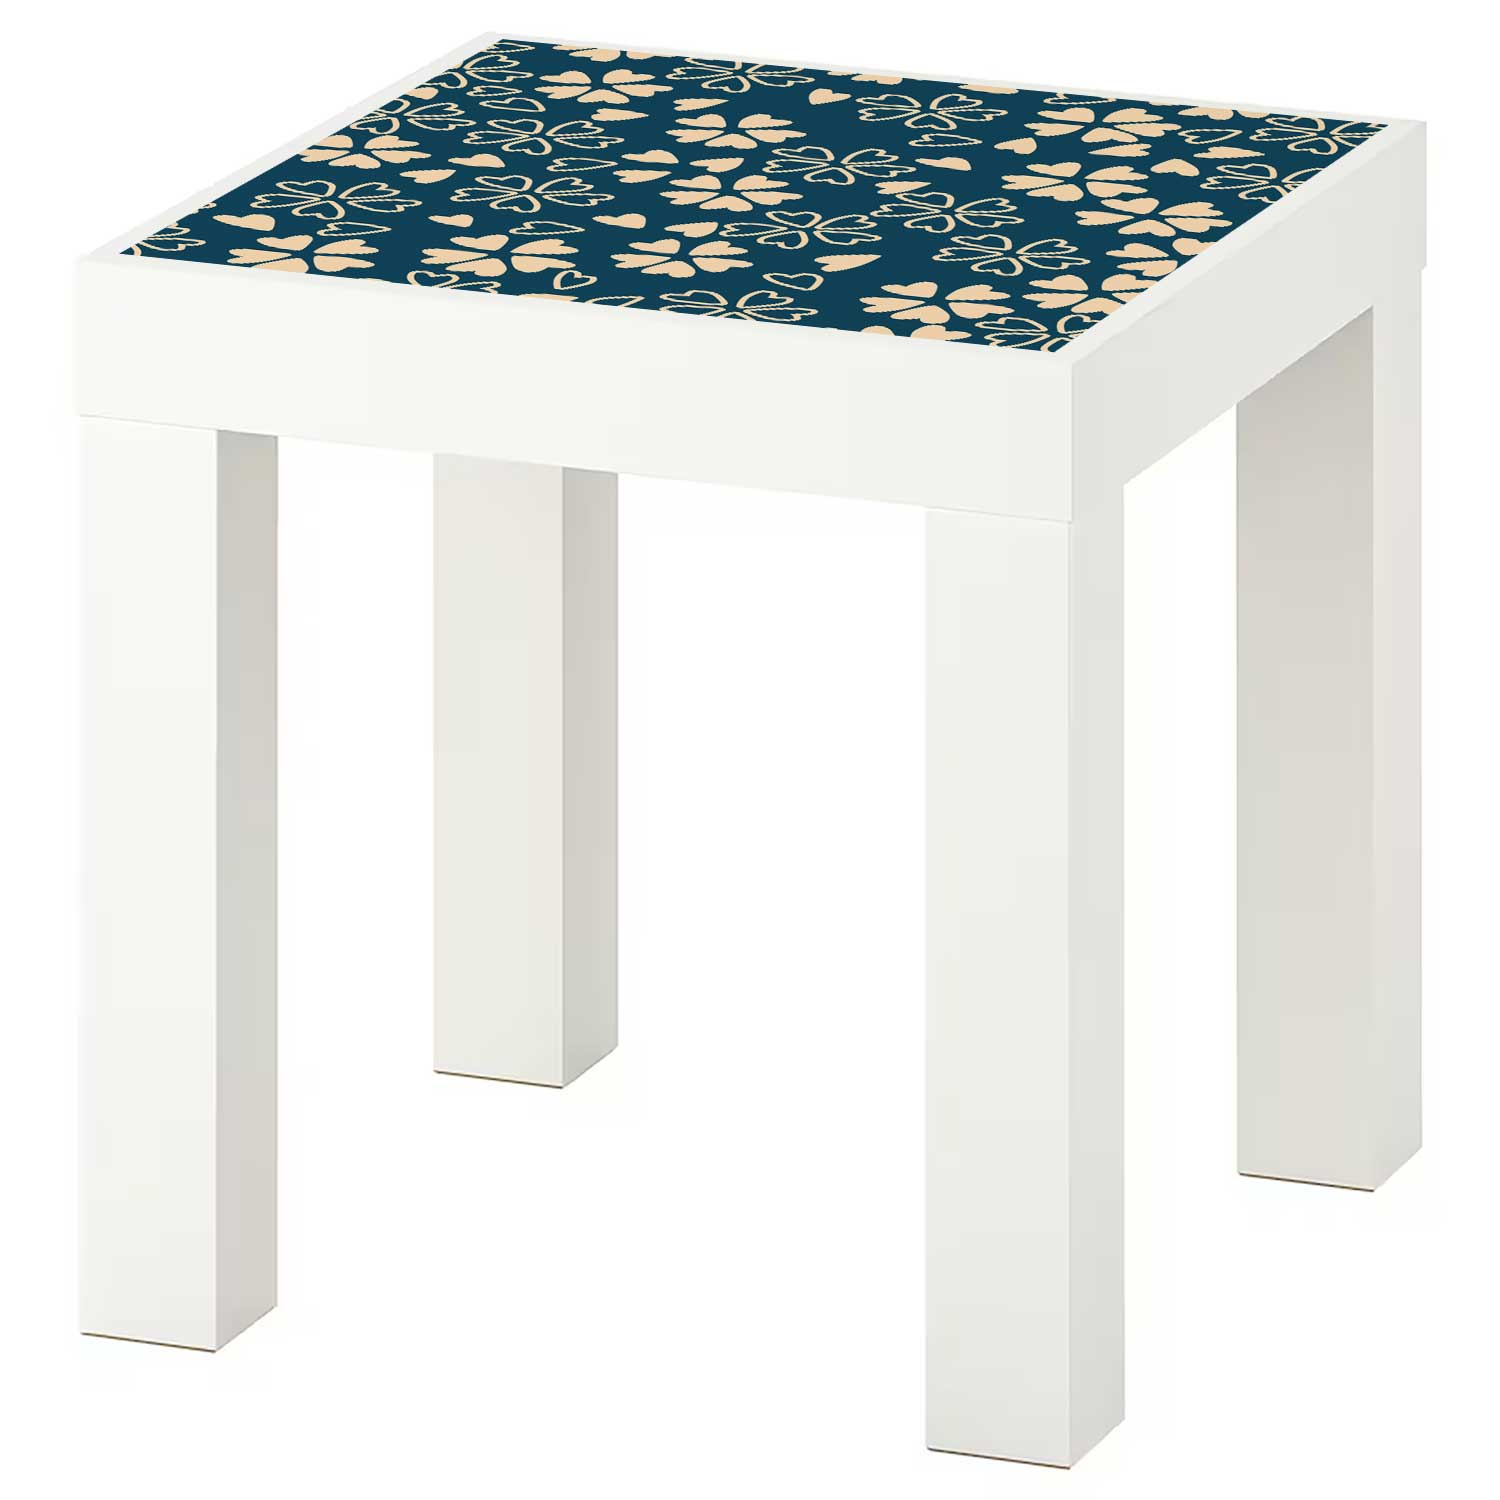 Möbelfolie für IKEA Lack Tisch 35x35 cm 'Blüten'